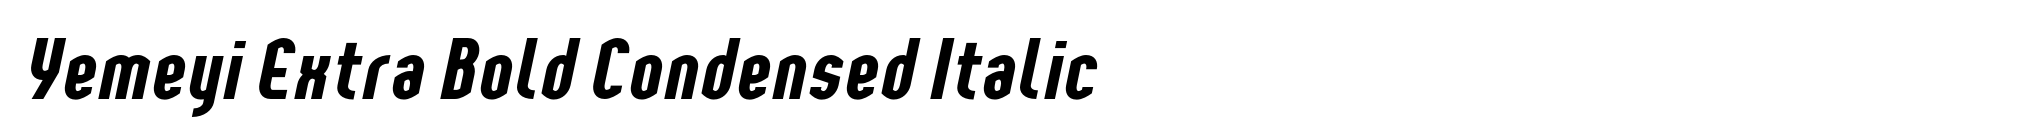 Yemeyi Extra Bold Condensed Italic image